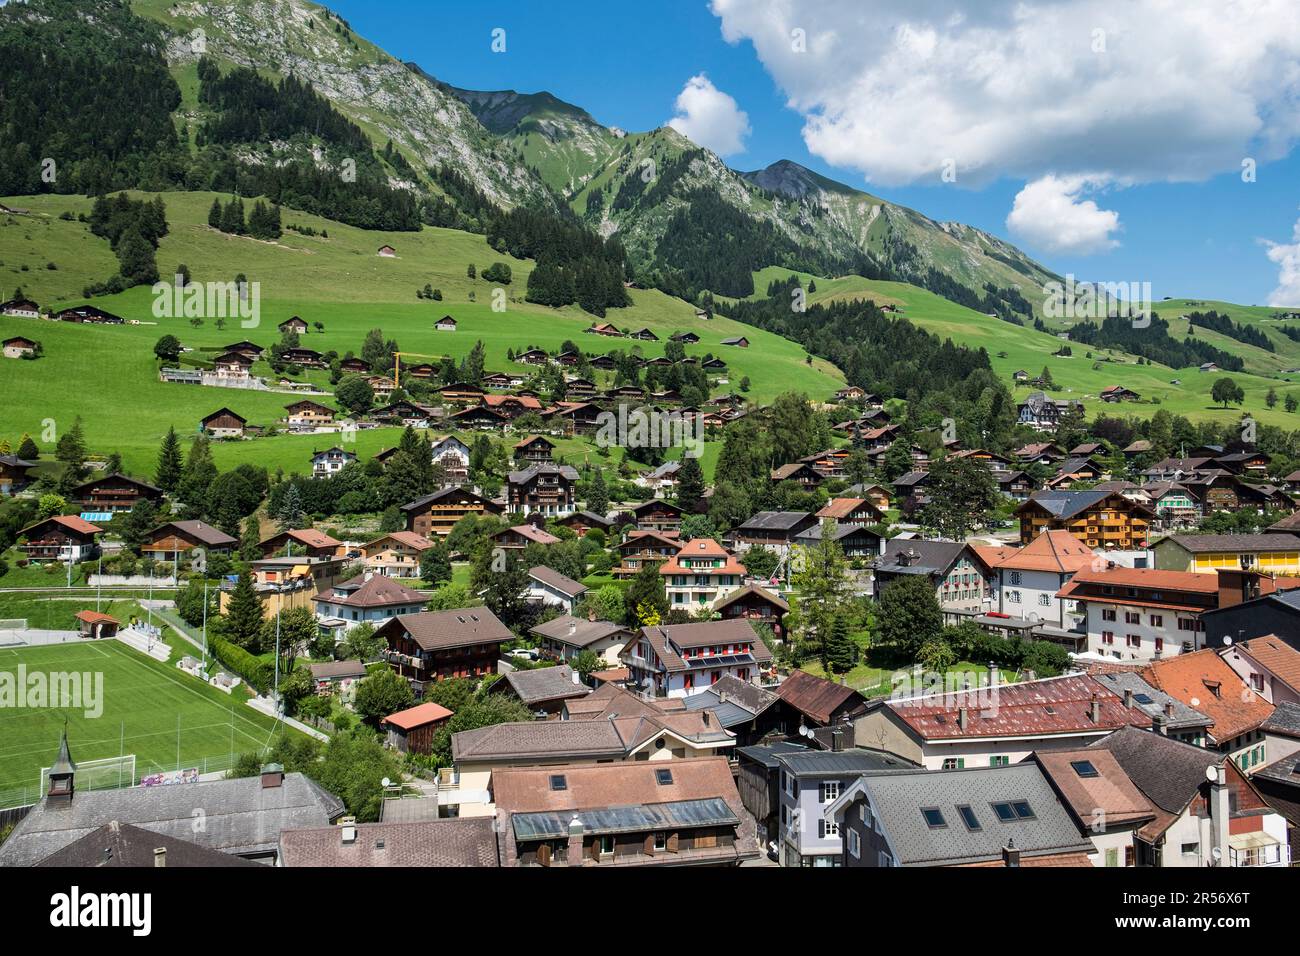 Die Schweiz. Kanton Vaud. Chateau d'Oex. Querformat Stockfoto